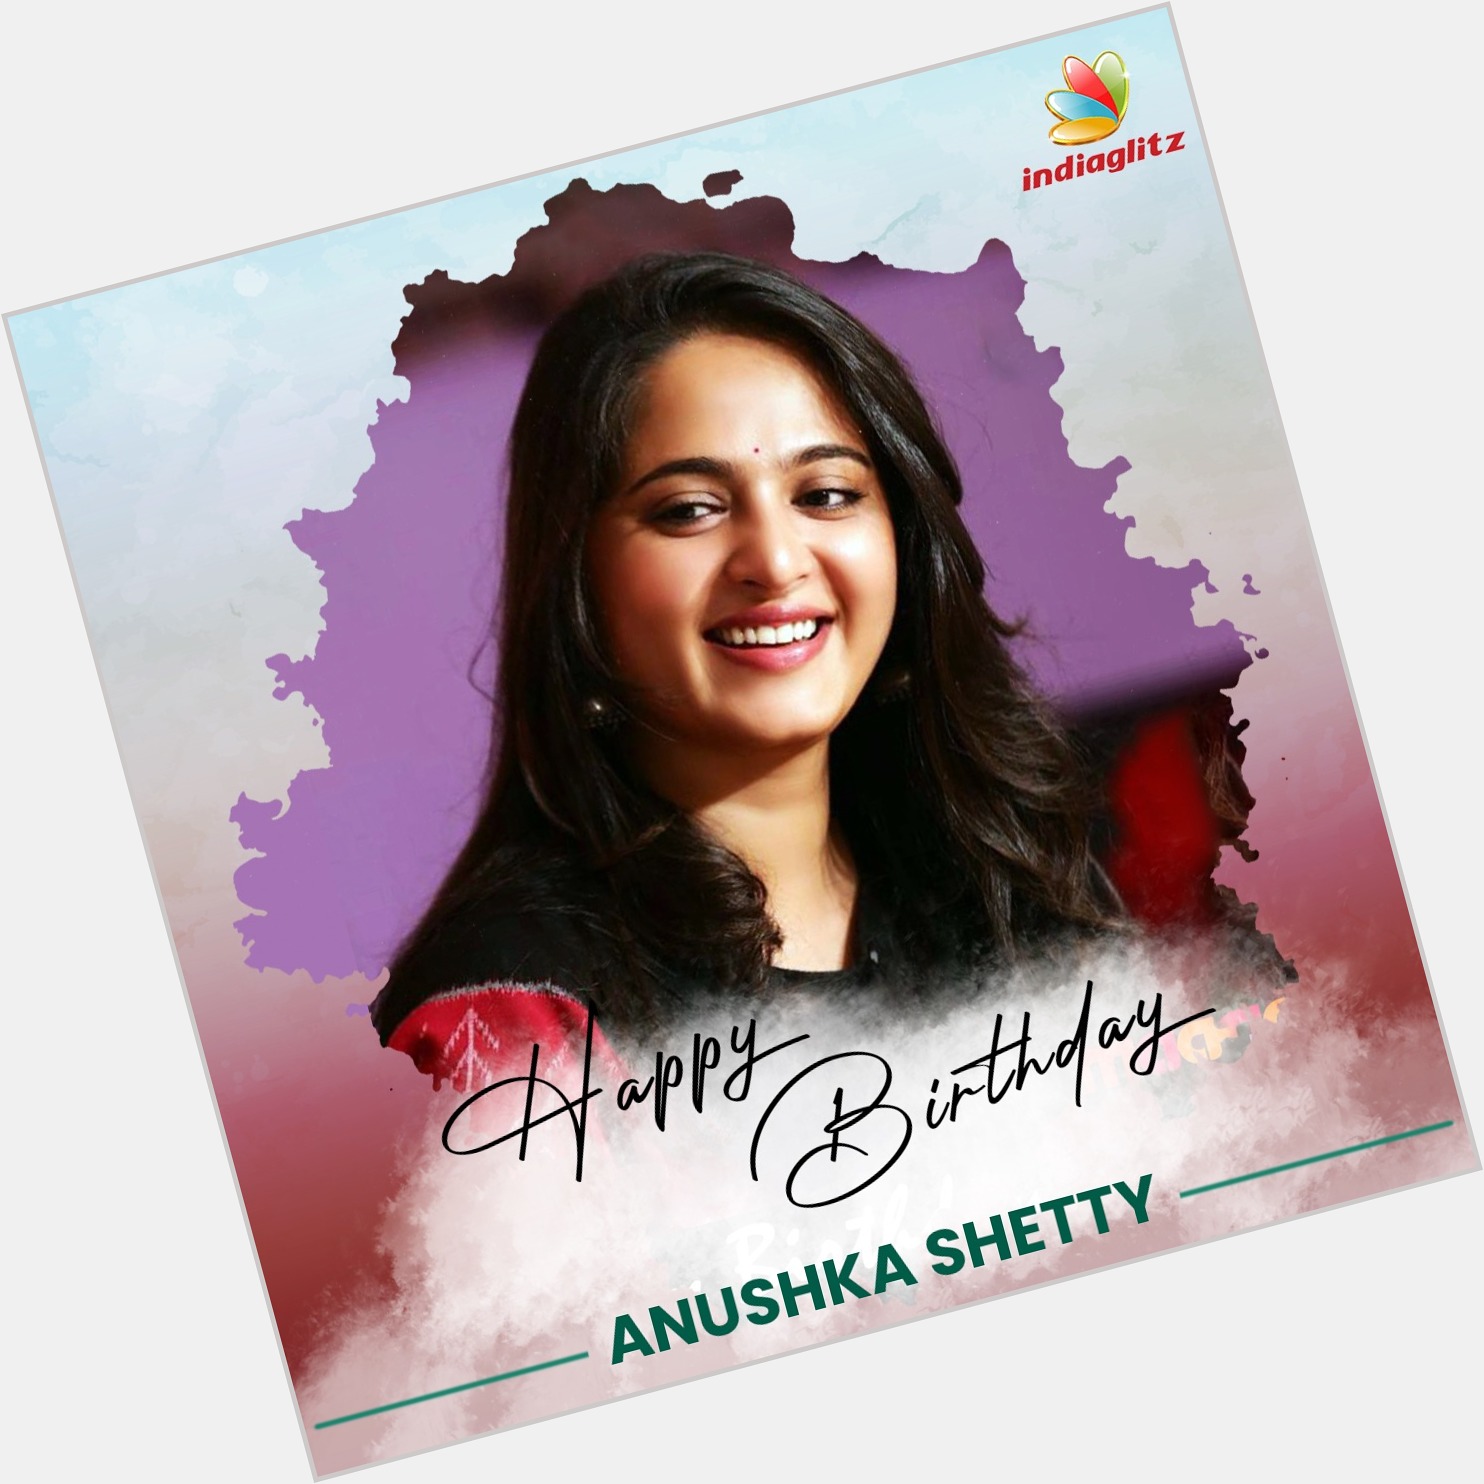 Wishing Actress Anushka Shetty a Very Happy Birthday   